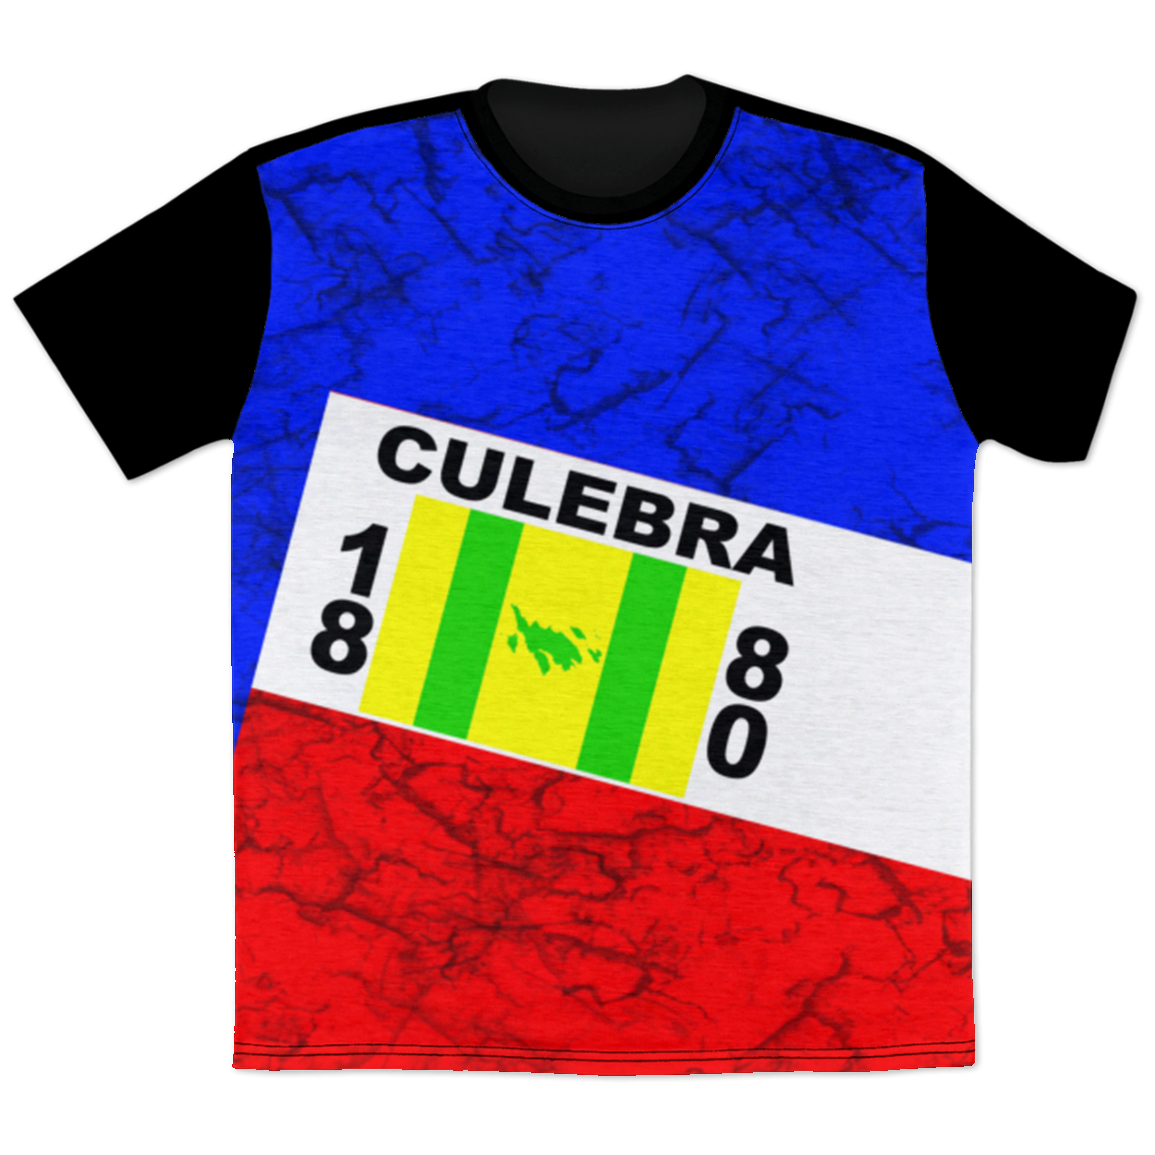 Culebra T-Shirt - Puerto Rican Pride